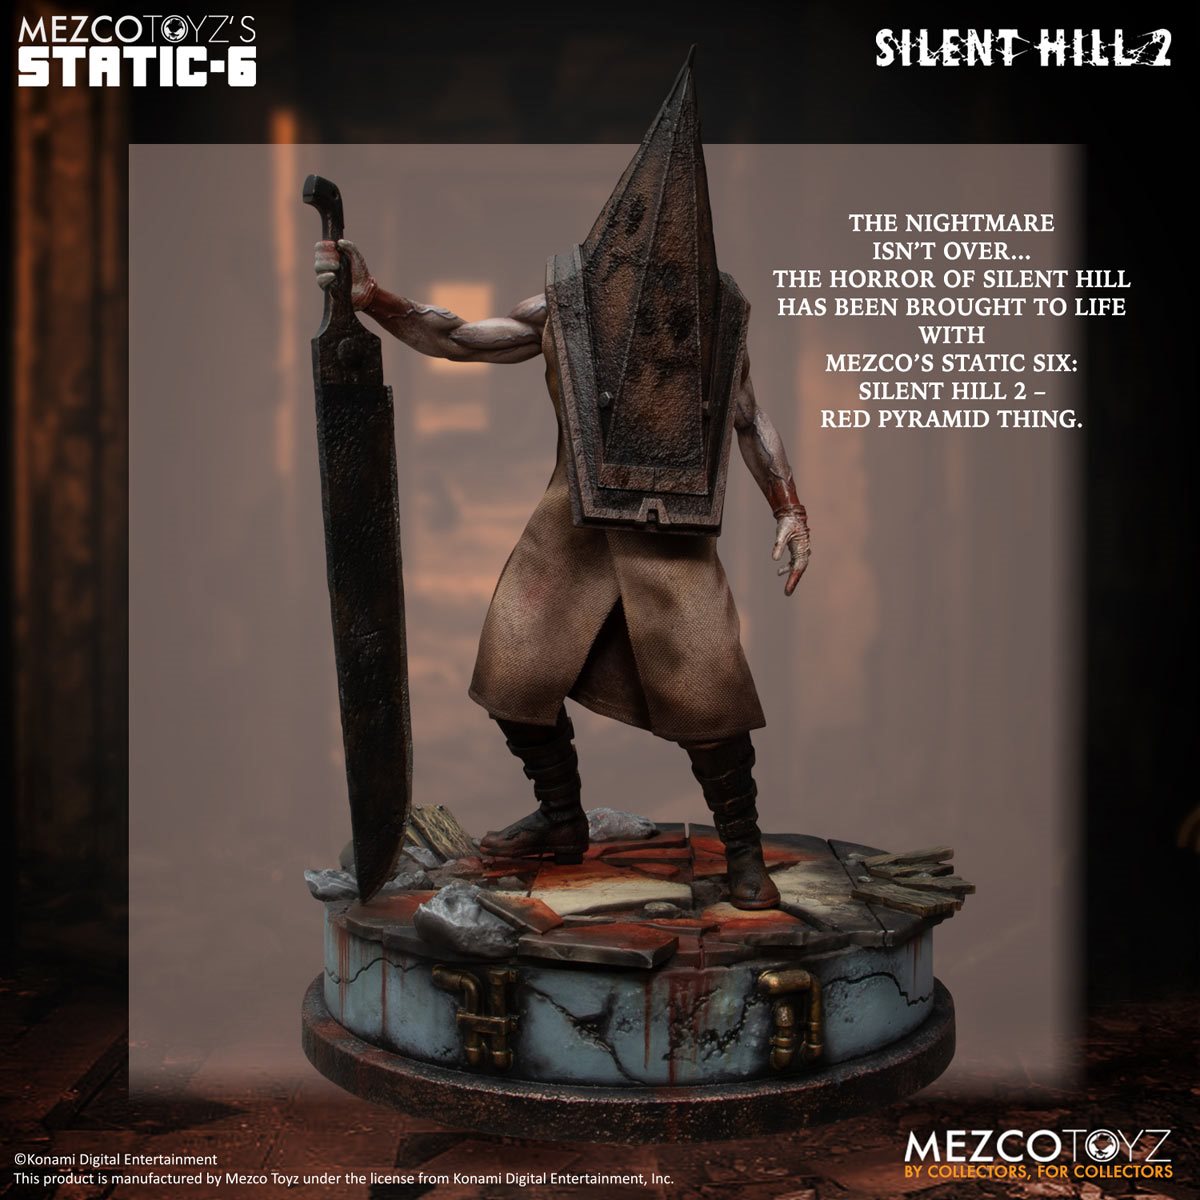 Pyramid Head, Silent Hill, figurine, figurine